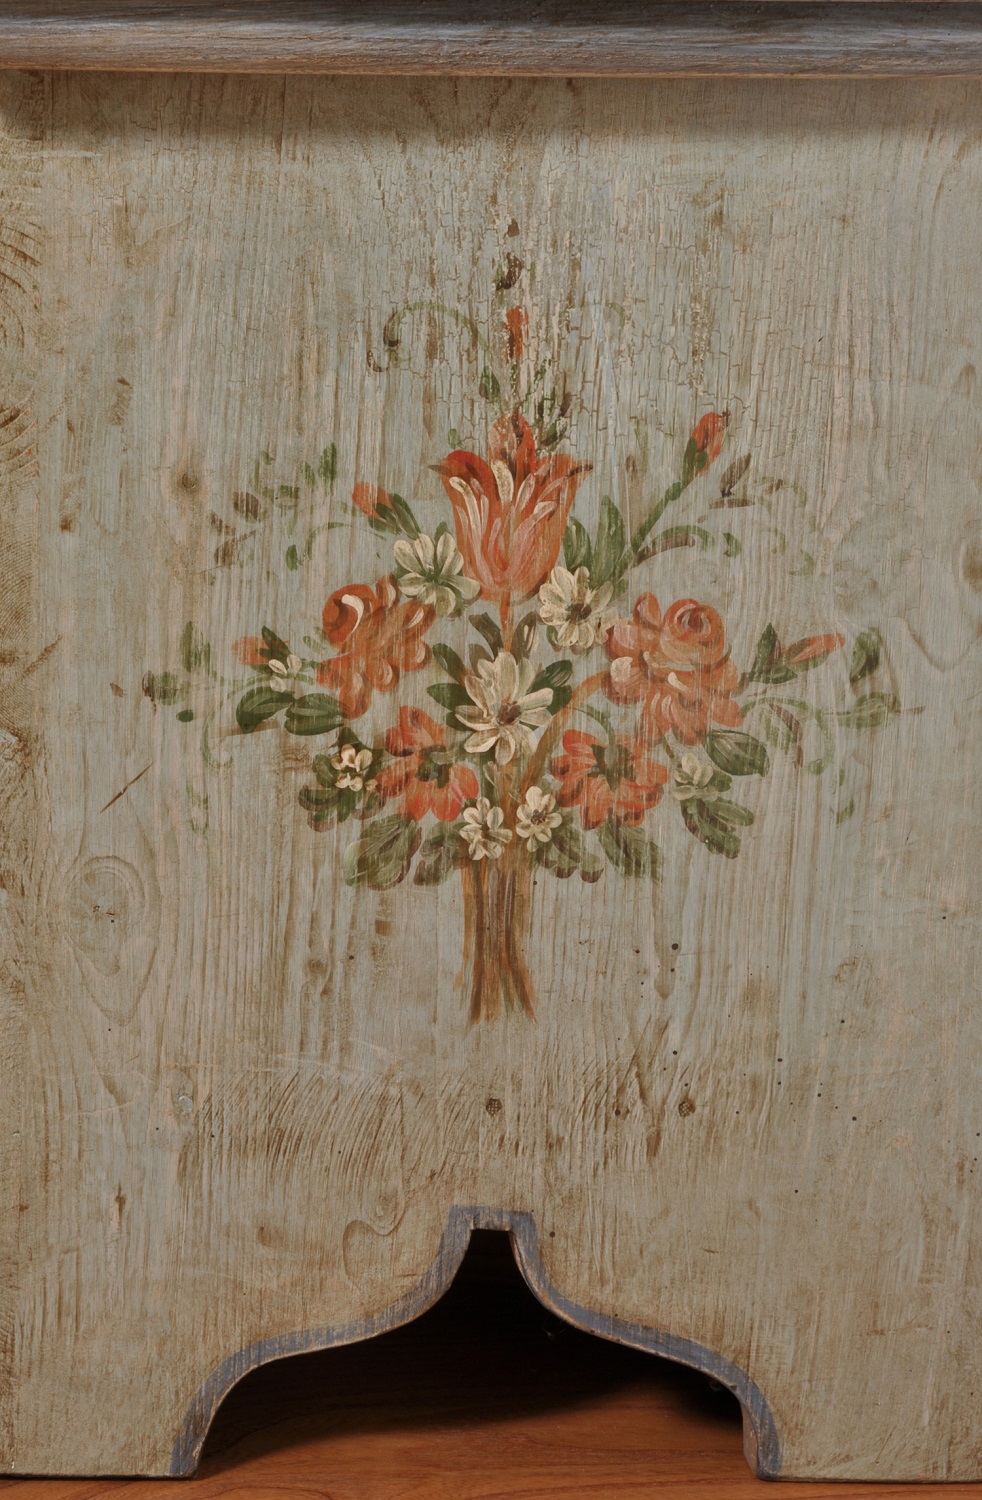 pregiata cassapanca costruita su misura realizzata dall’arredo originale della metà del 600 laccata e decorata a mano artigianalmente in tonalità avio e fiori